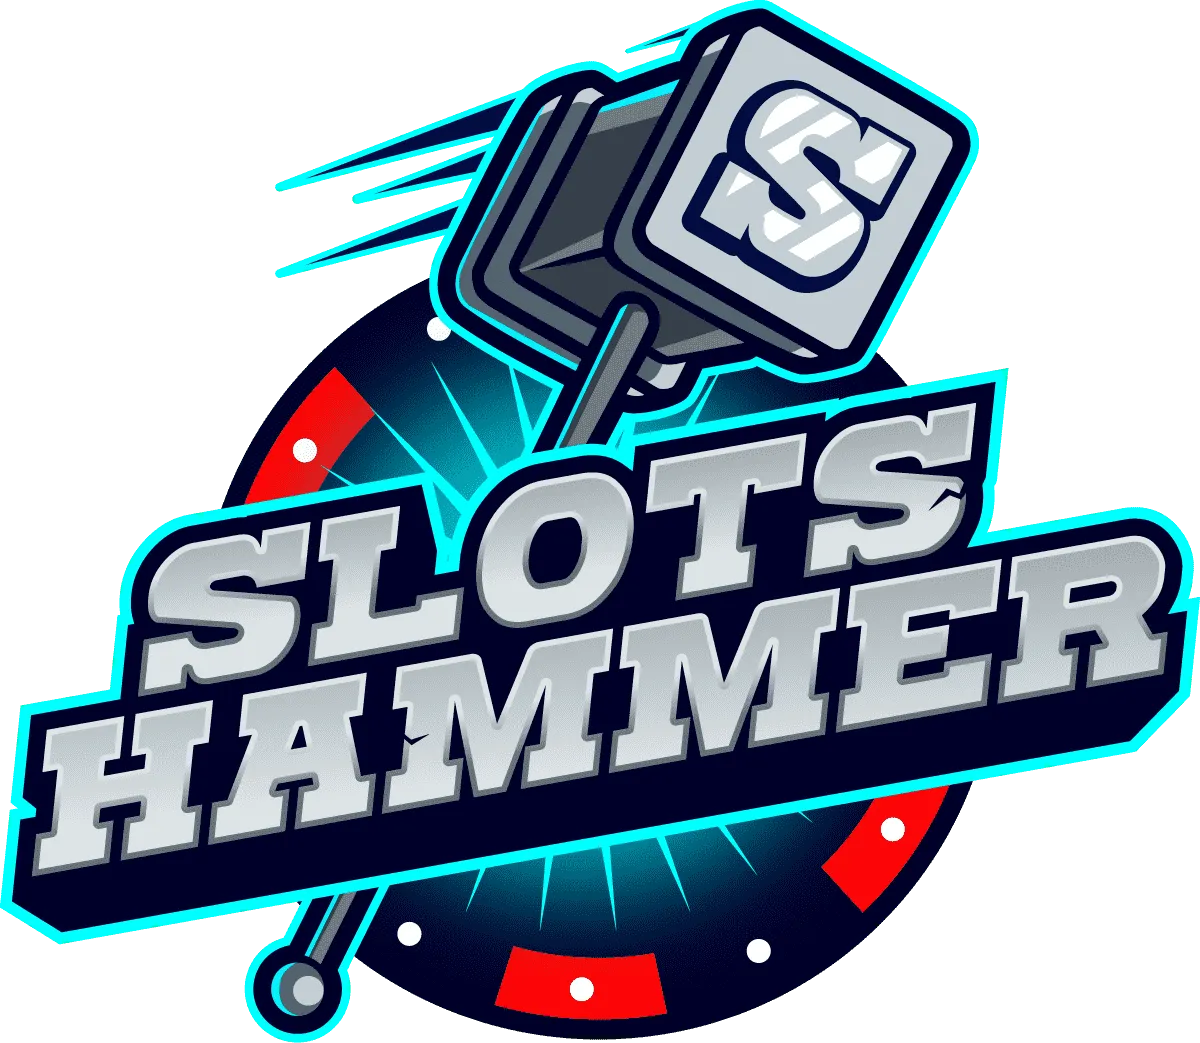 โปรโมชั่น Slots Hammer Casino: ข้อเสนอคืนเงินสด 10% ในวันสุดสัปดาห์
